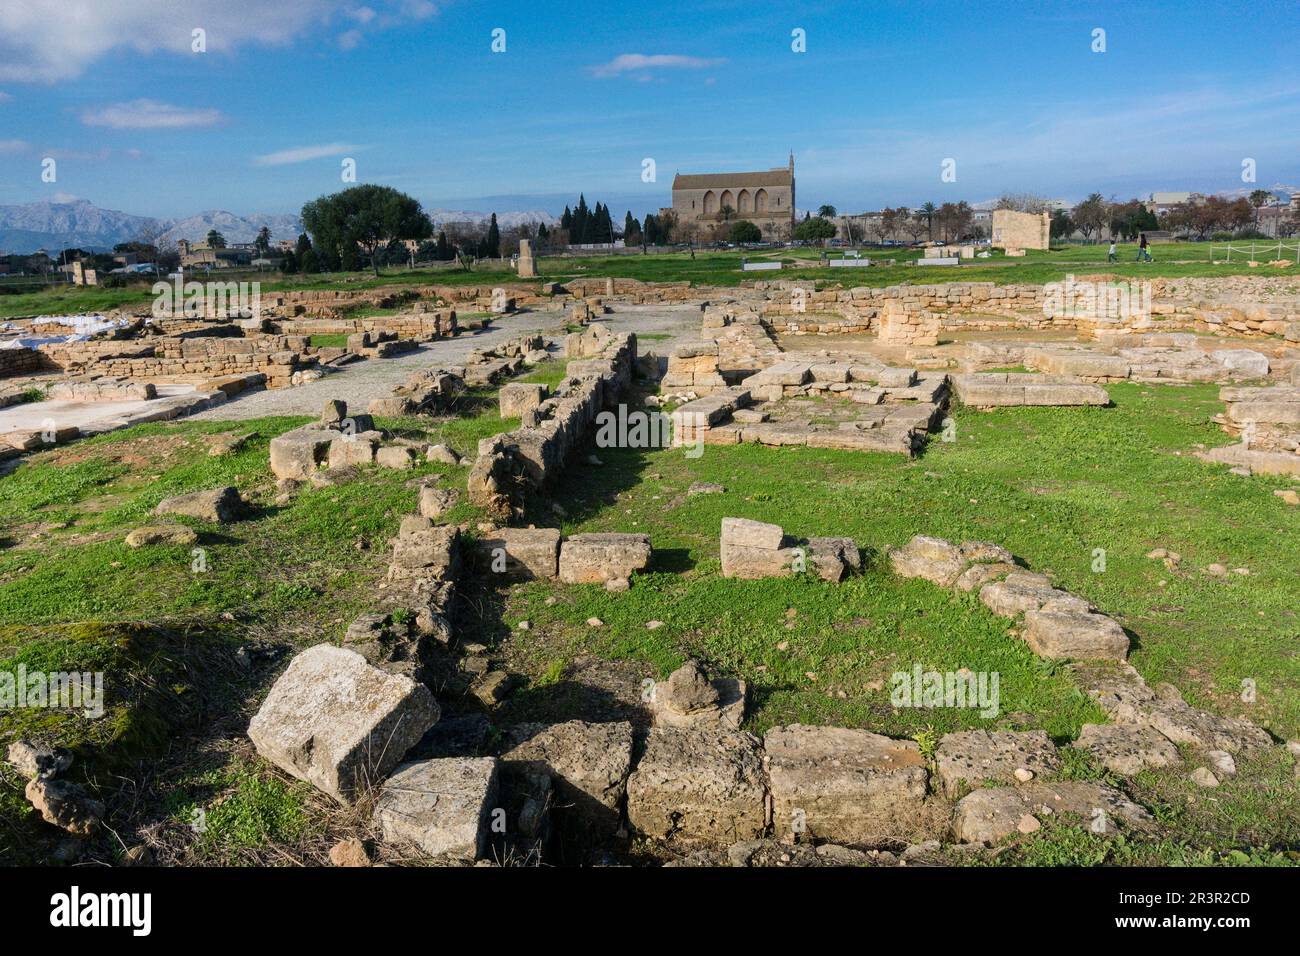 theather, römische Stadt Pollentia, republikanische Ära, 123 v. Chr., gegründet von Quintus Caecilius Metellus, Alcudia, Mallorca, Balearen, Spanien. Stockfoto